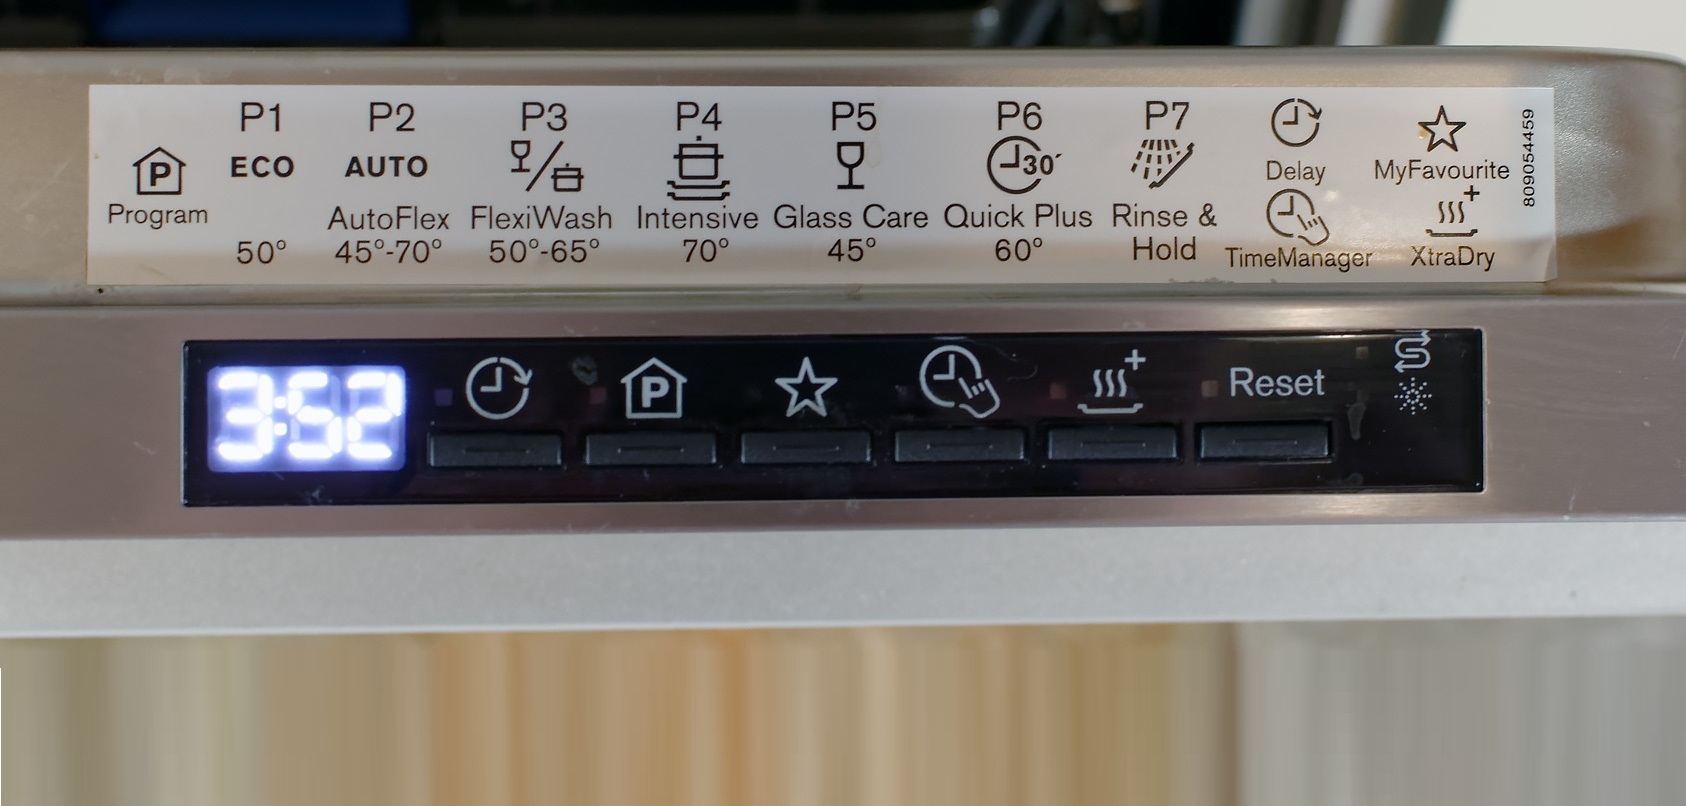 mod utama mesin basuh pinggan mangkuk Electrolux